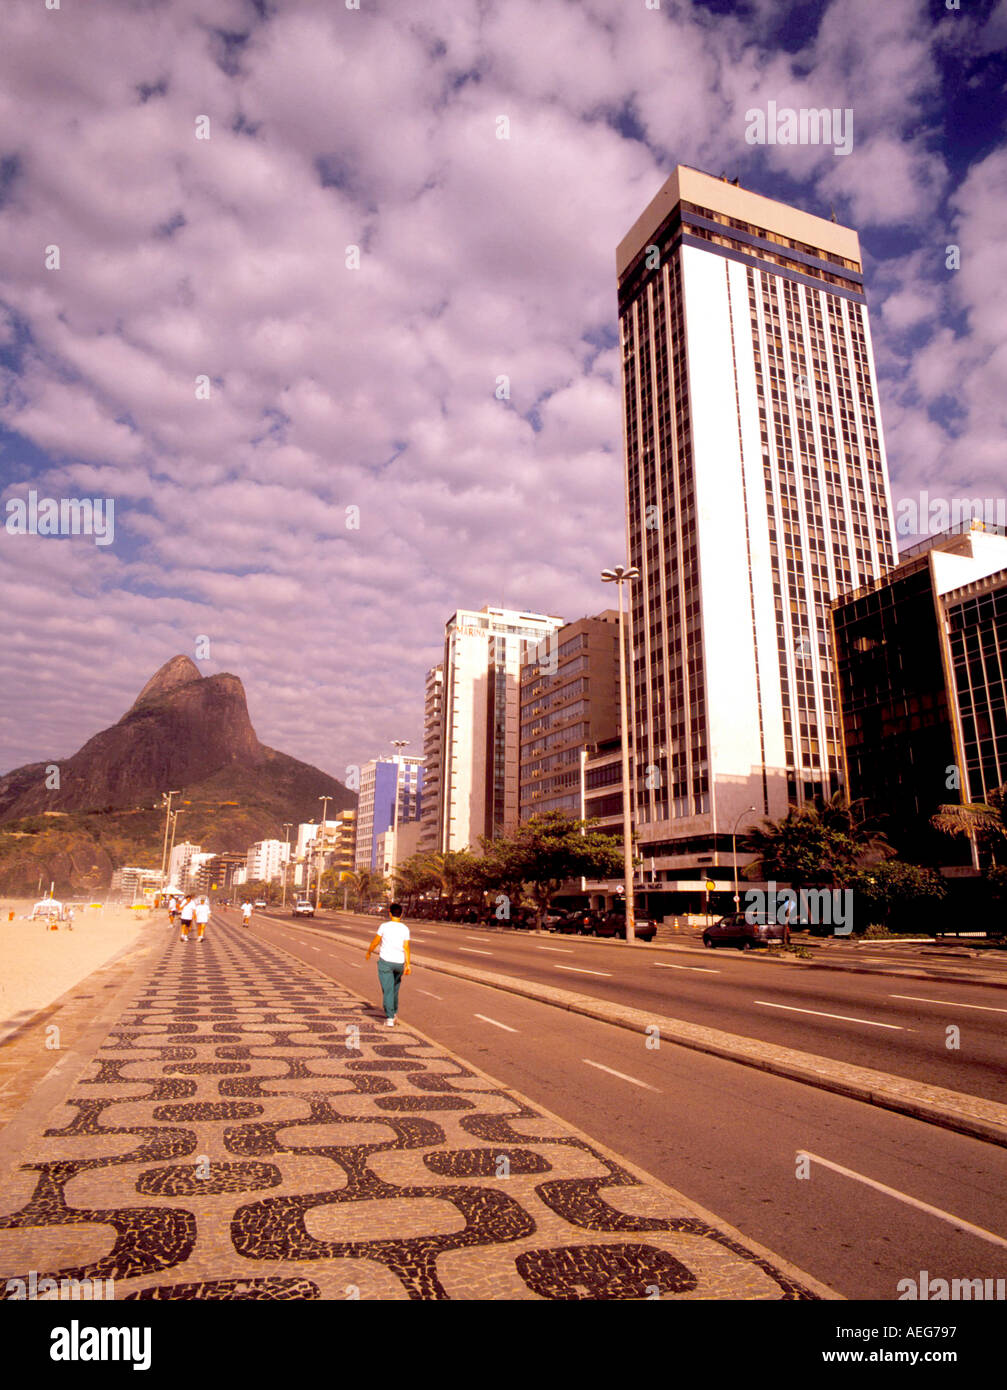 Travel Brasil leblon marciapiede calcadao persone passer da passer passeggiando street hotel marina lungomare trasporti architettura Foto Stock